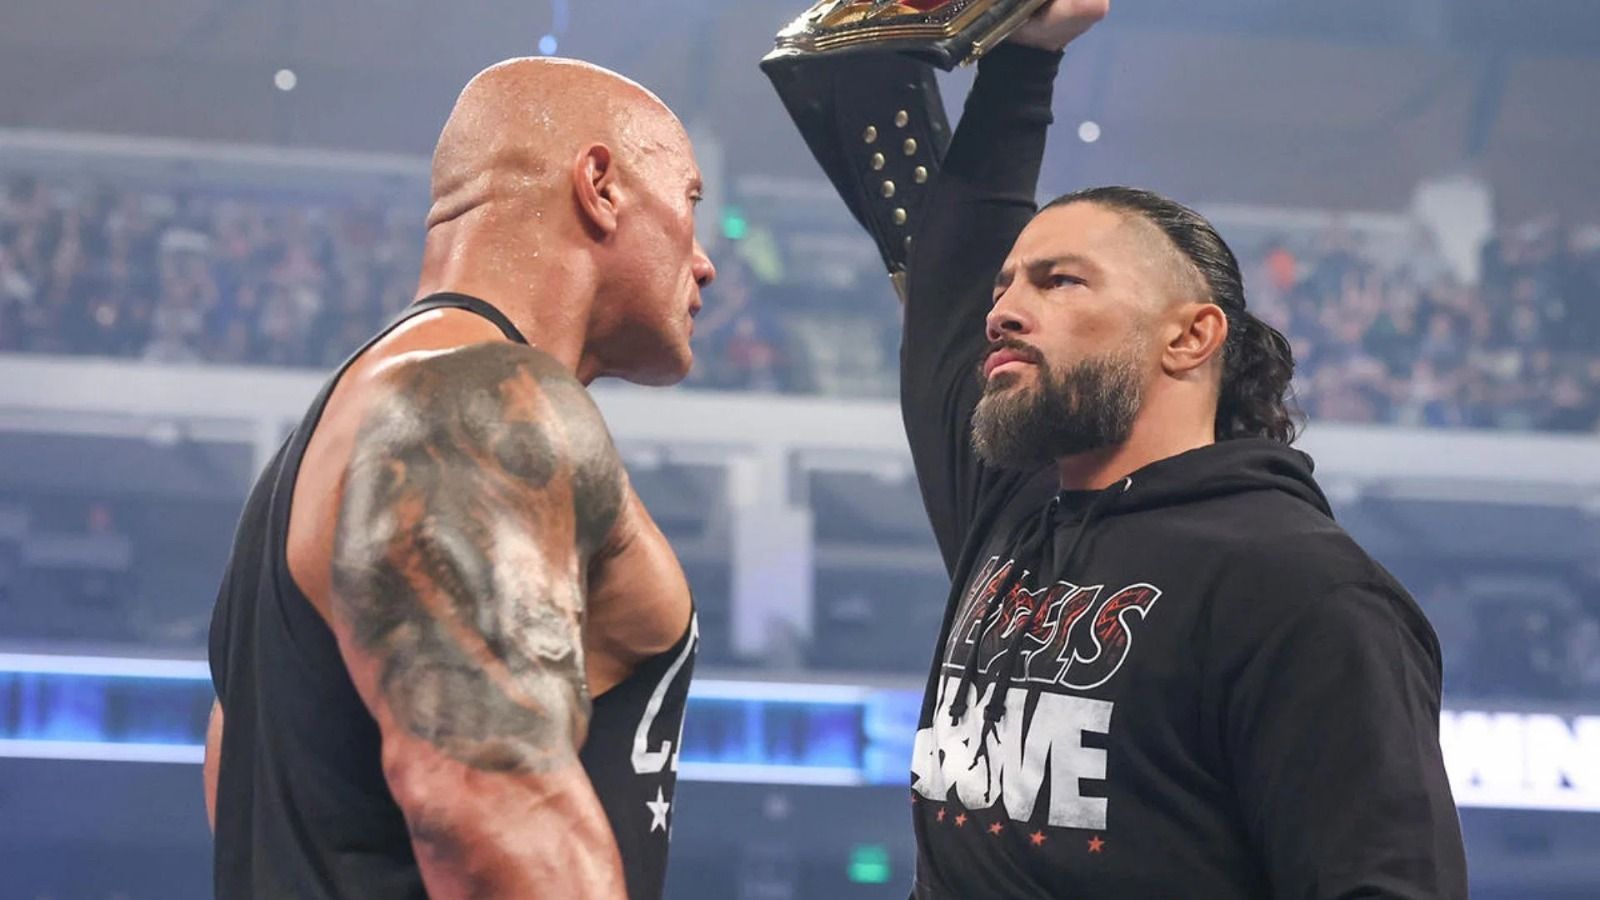 द रॉक और रोमन रेस के बीच WWE WrestleMania 40 में मैच हो सकता है